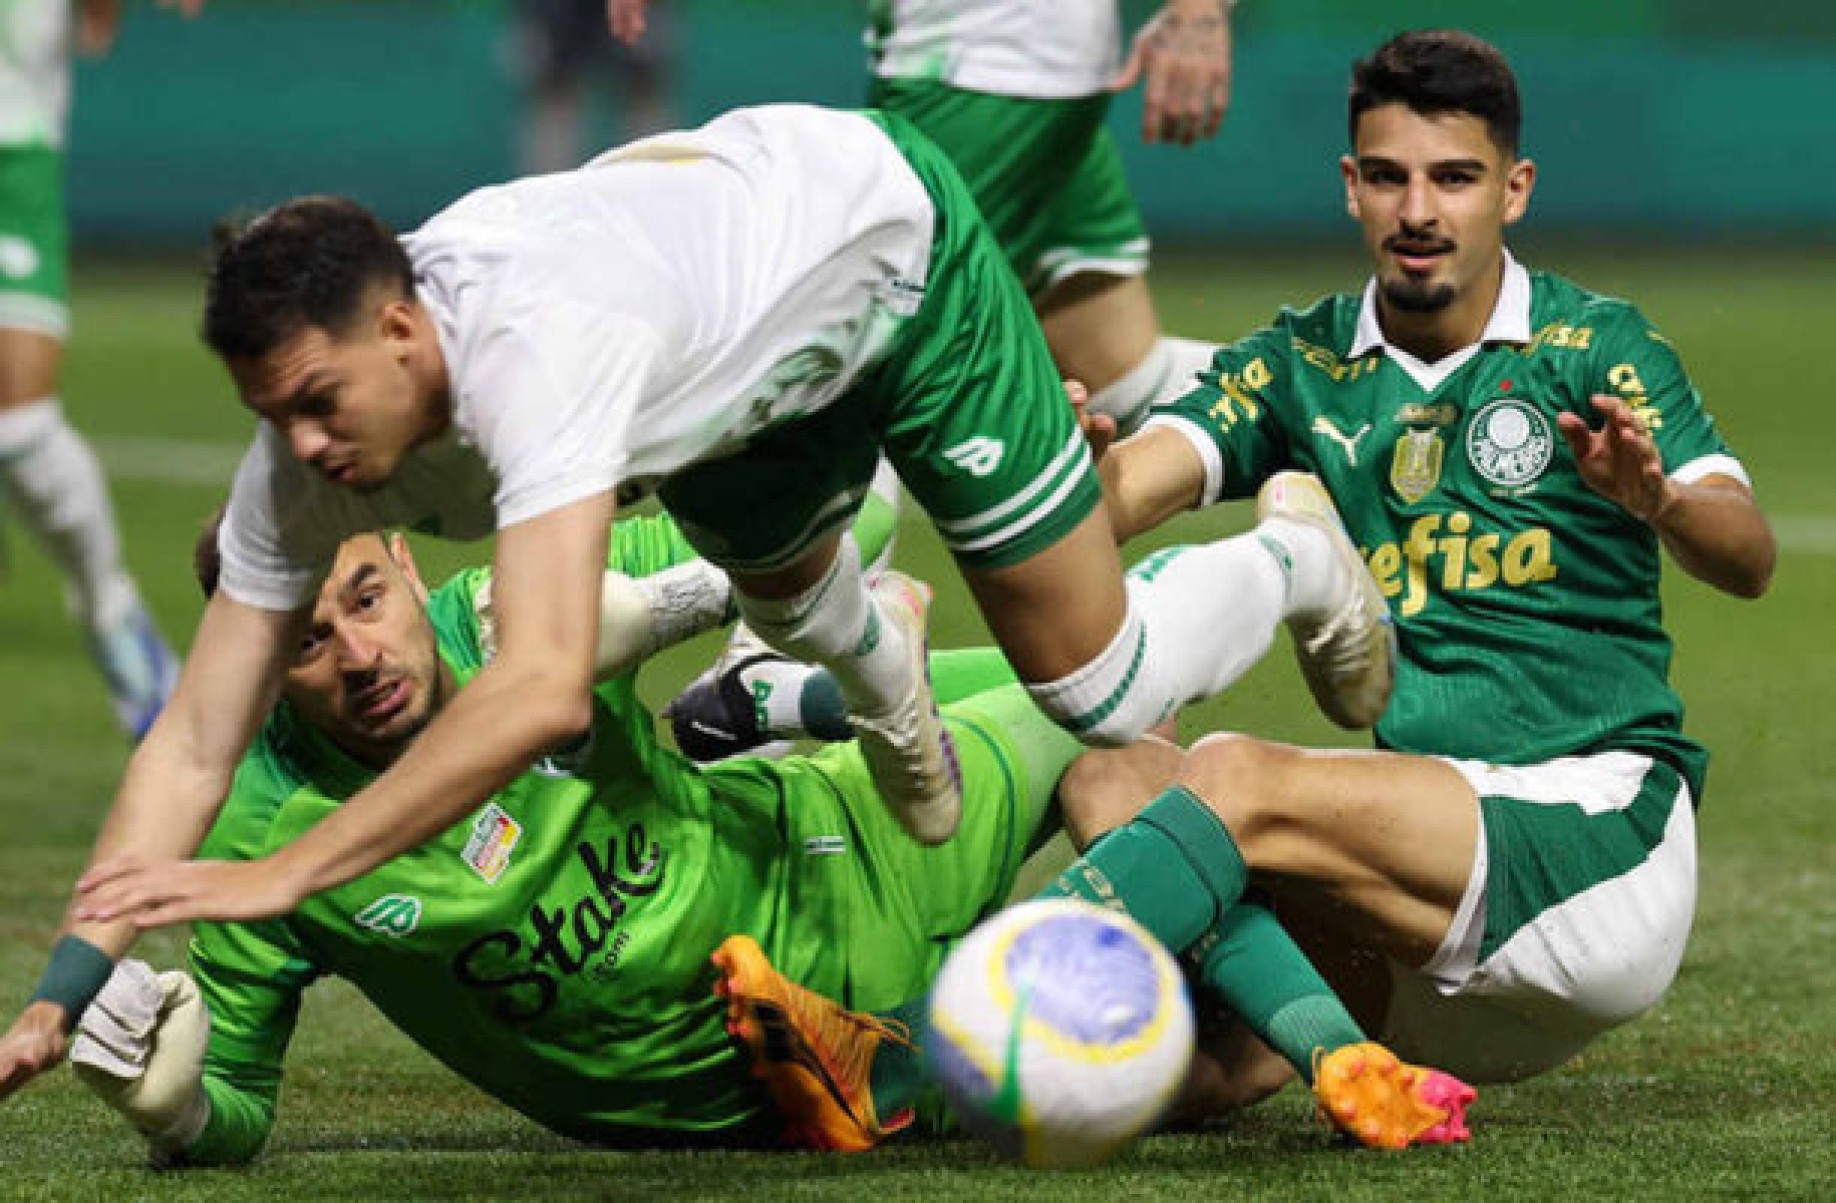 Flaco López disputa bola com defensor do Juventude, no Allianz Parque